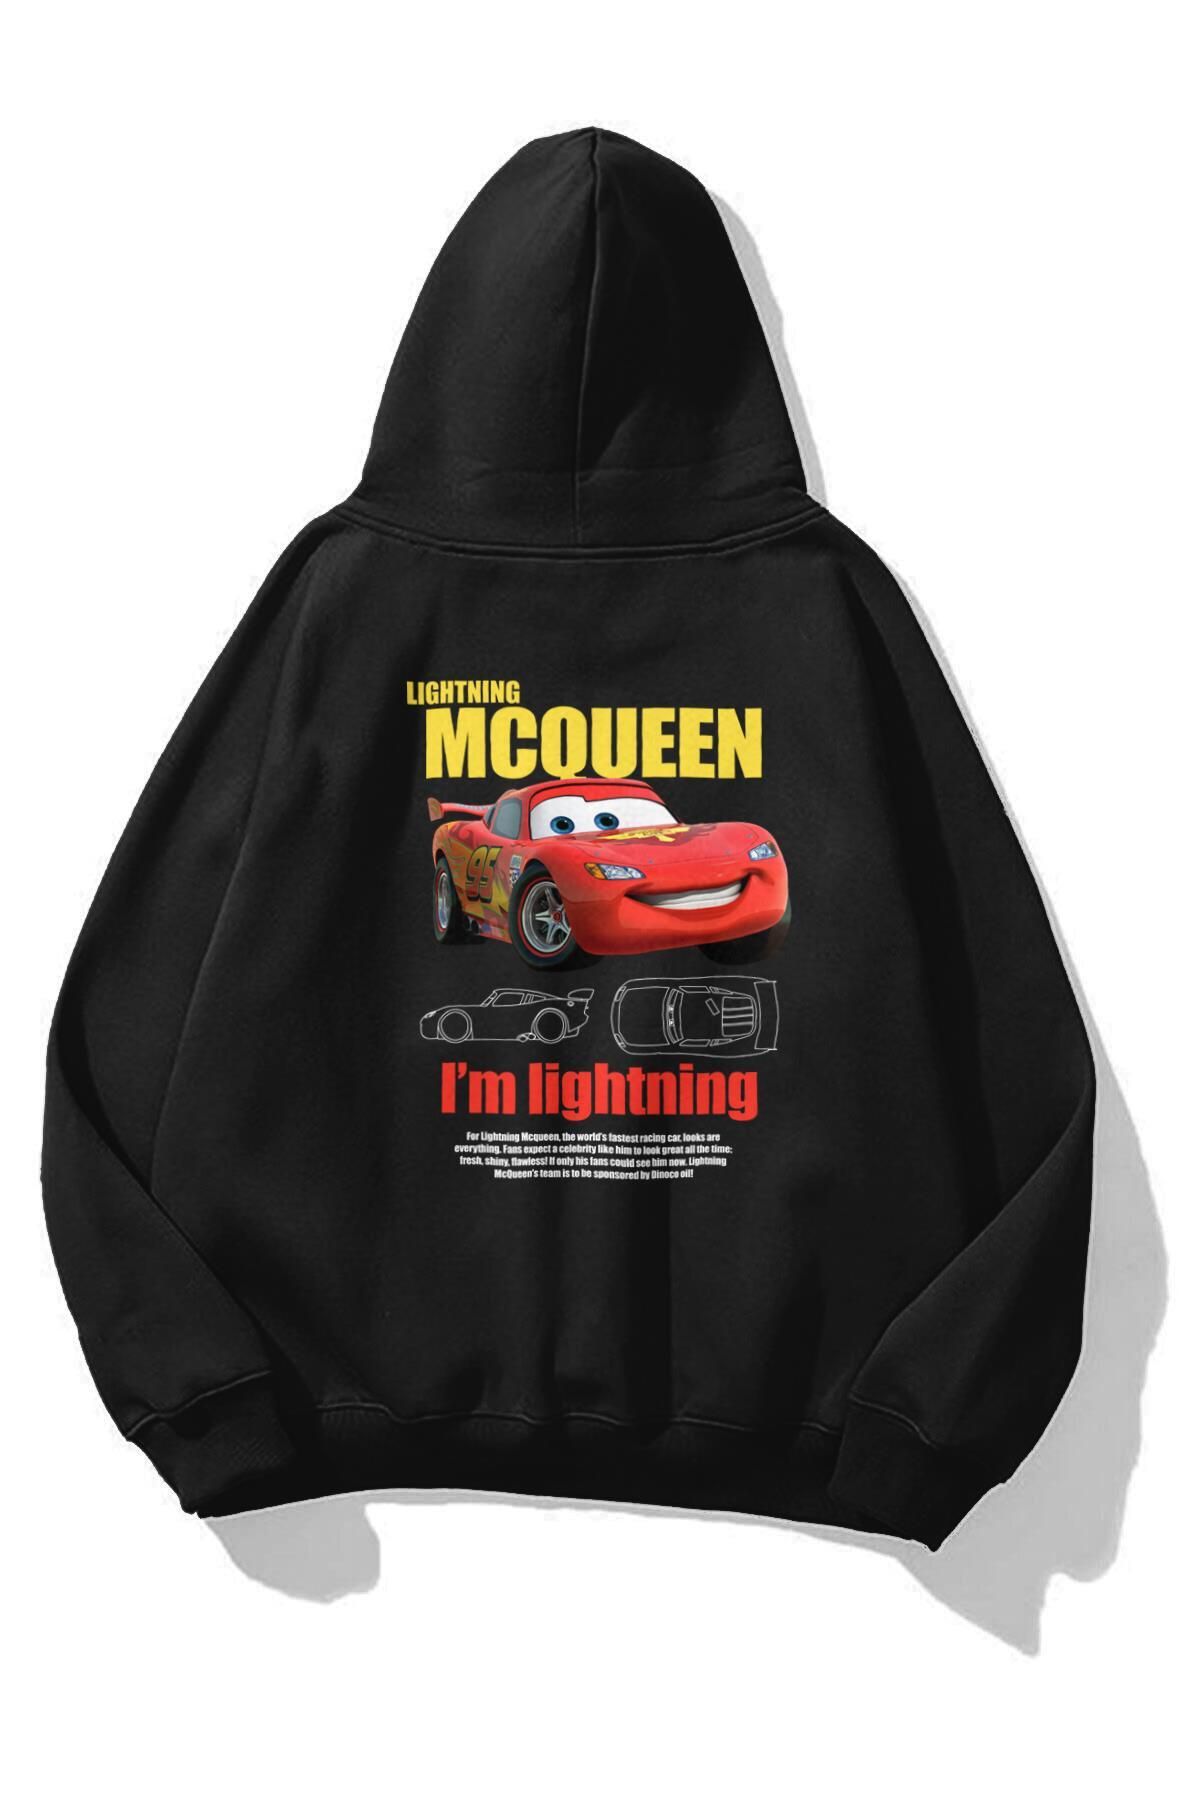 Trendiz Unisex Lightning Mcqueen Cars Sweatshirt Siyah